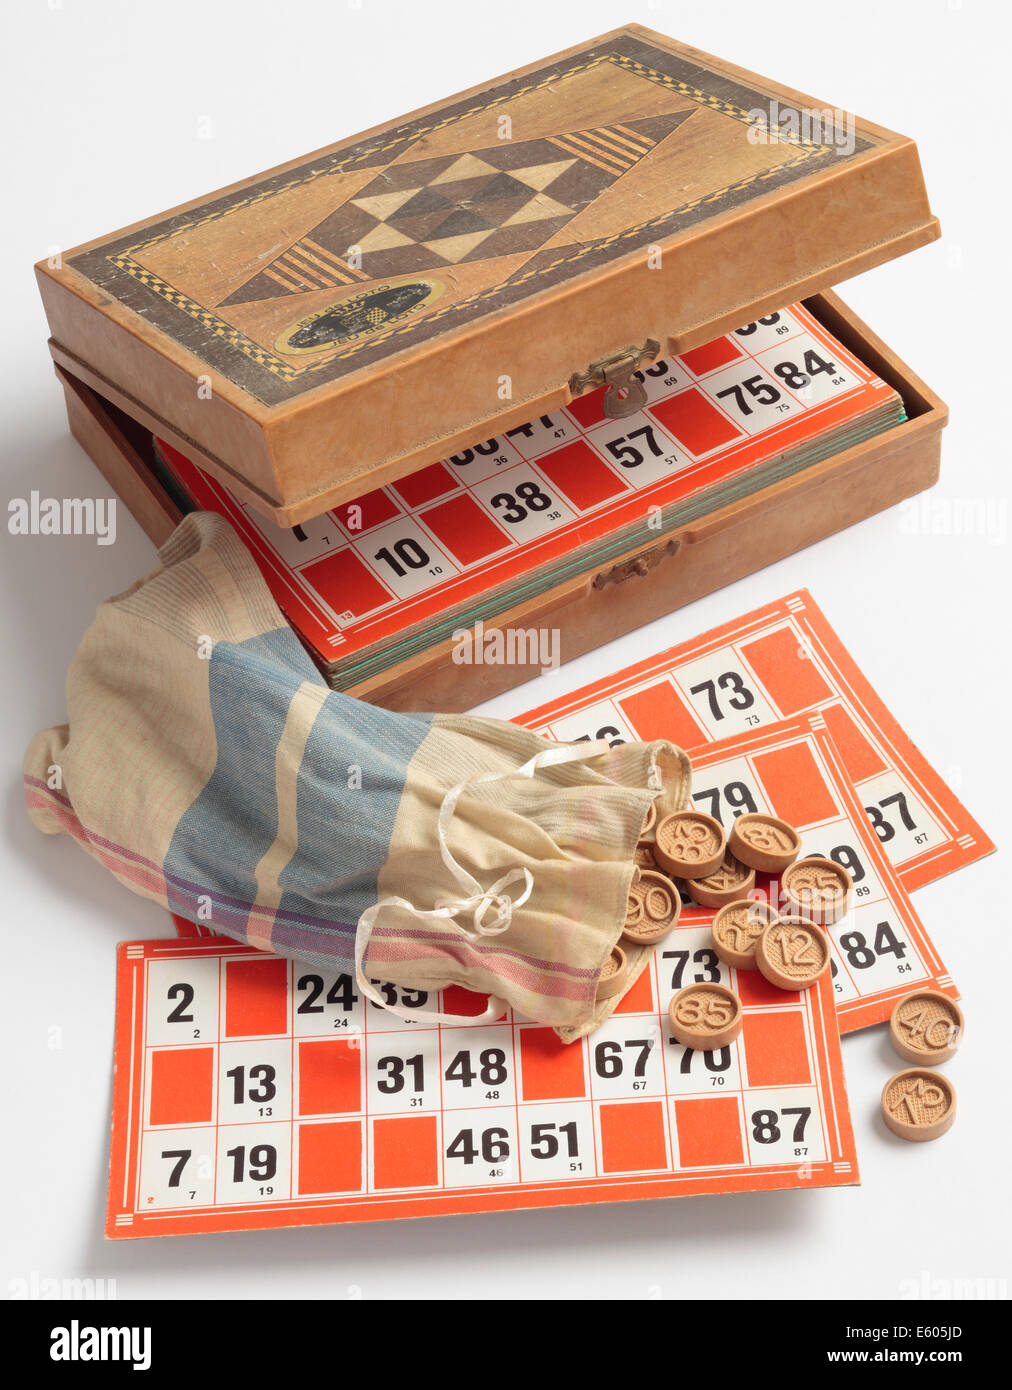 Jeu de Bingo ou Lotto. Un exemple français de vintage ce jeu dans une boîte. Banque D'Images